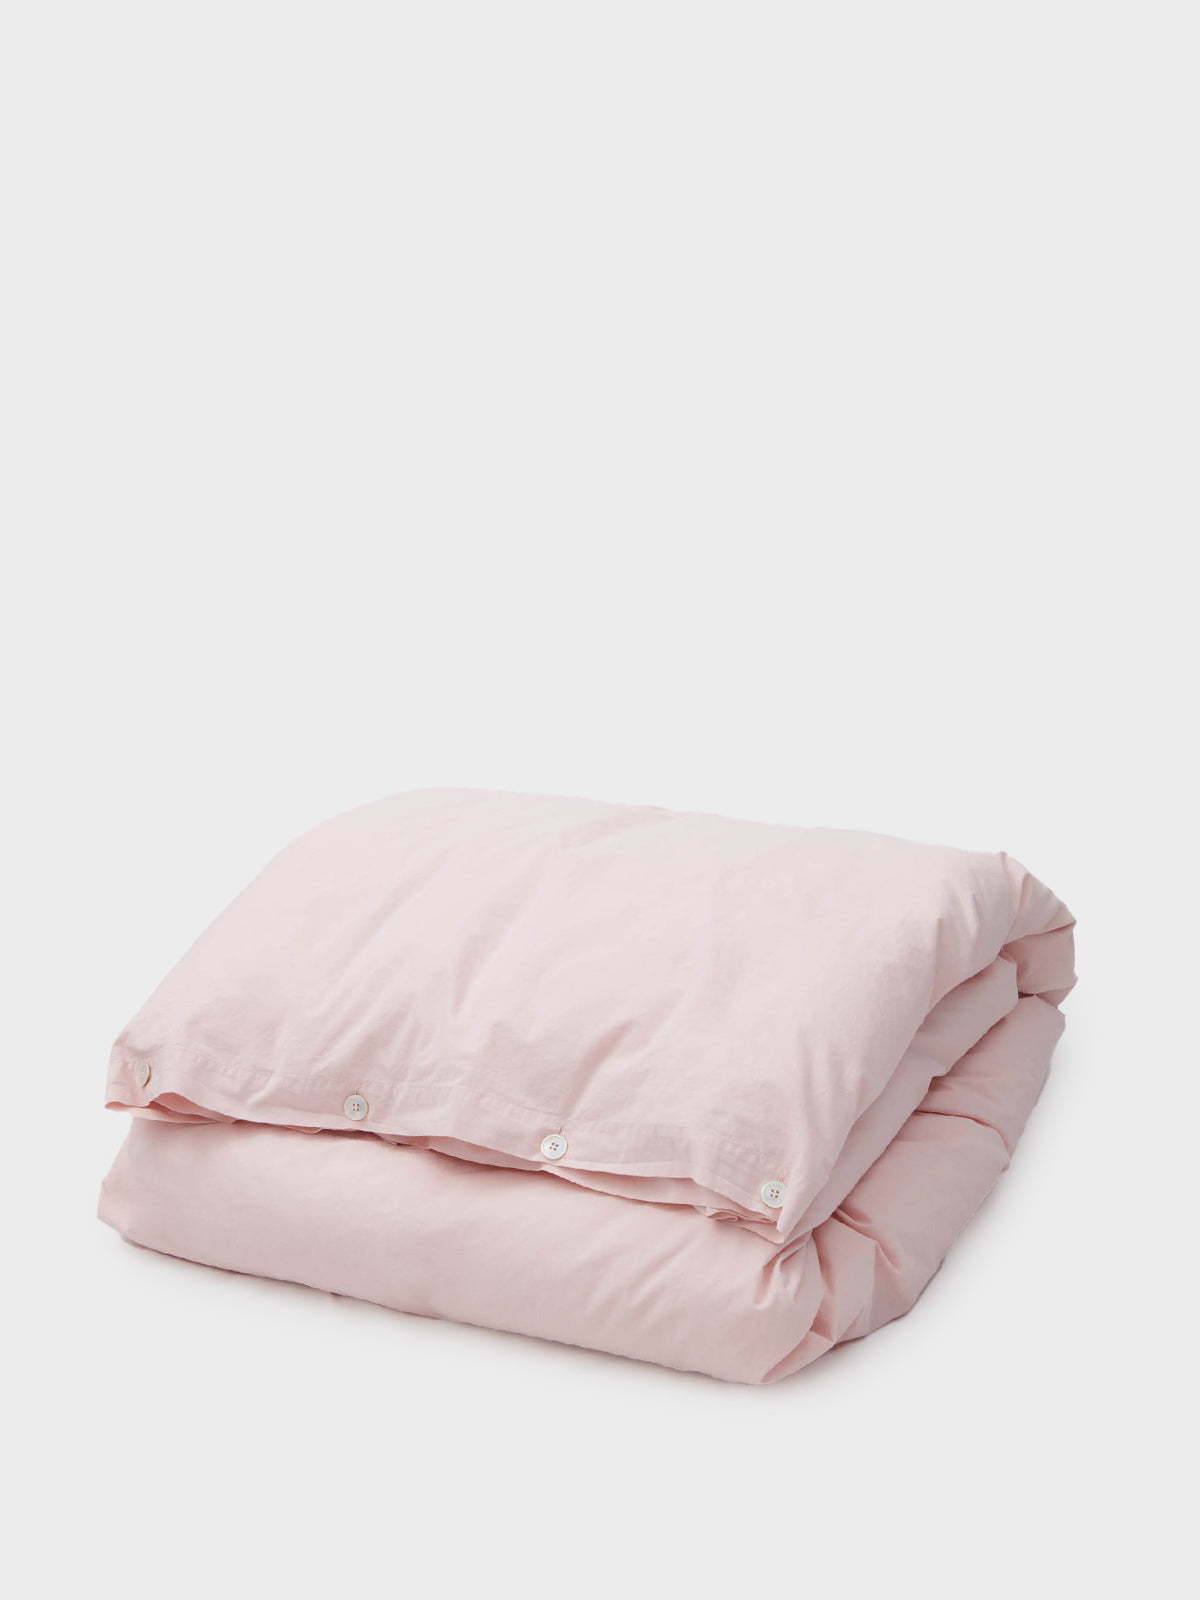 Tekla - Percale Duvet Cover in Petal Pink